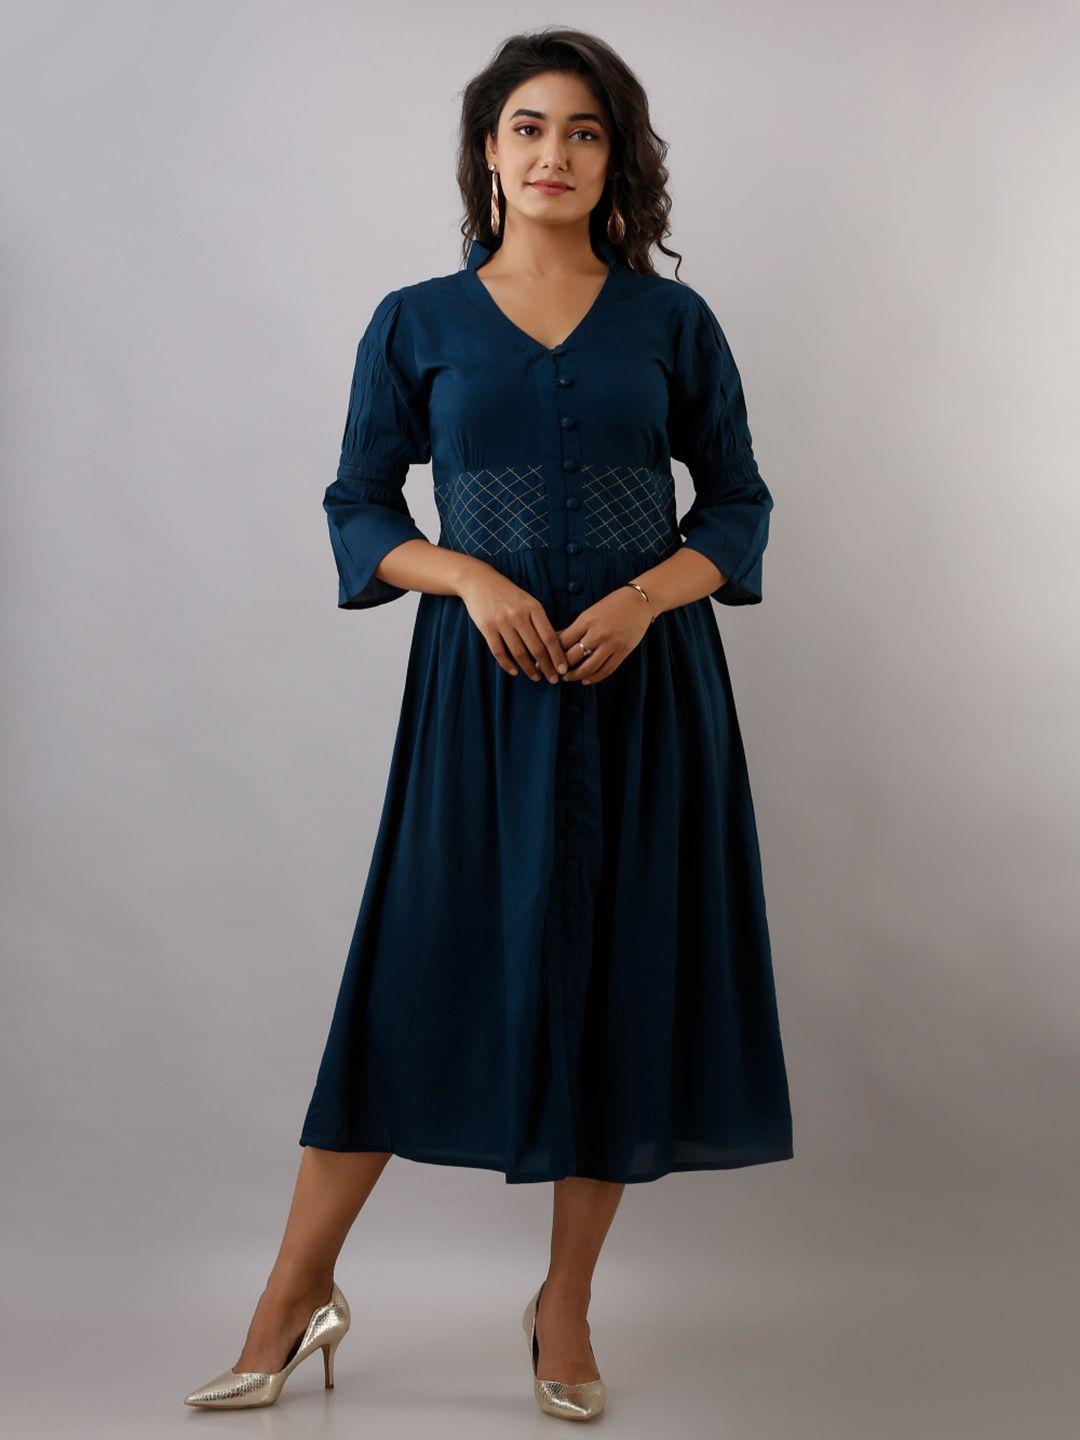 kalini-teal-blue-maxi-mini-dress